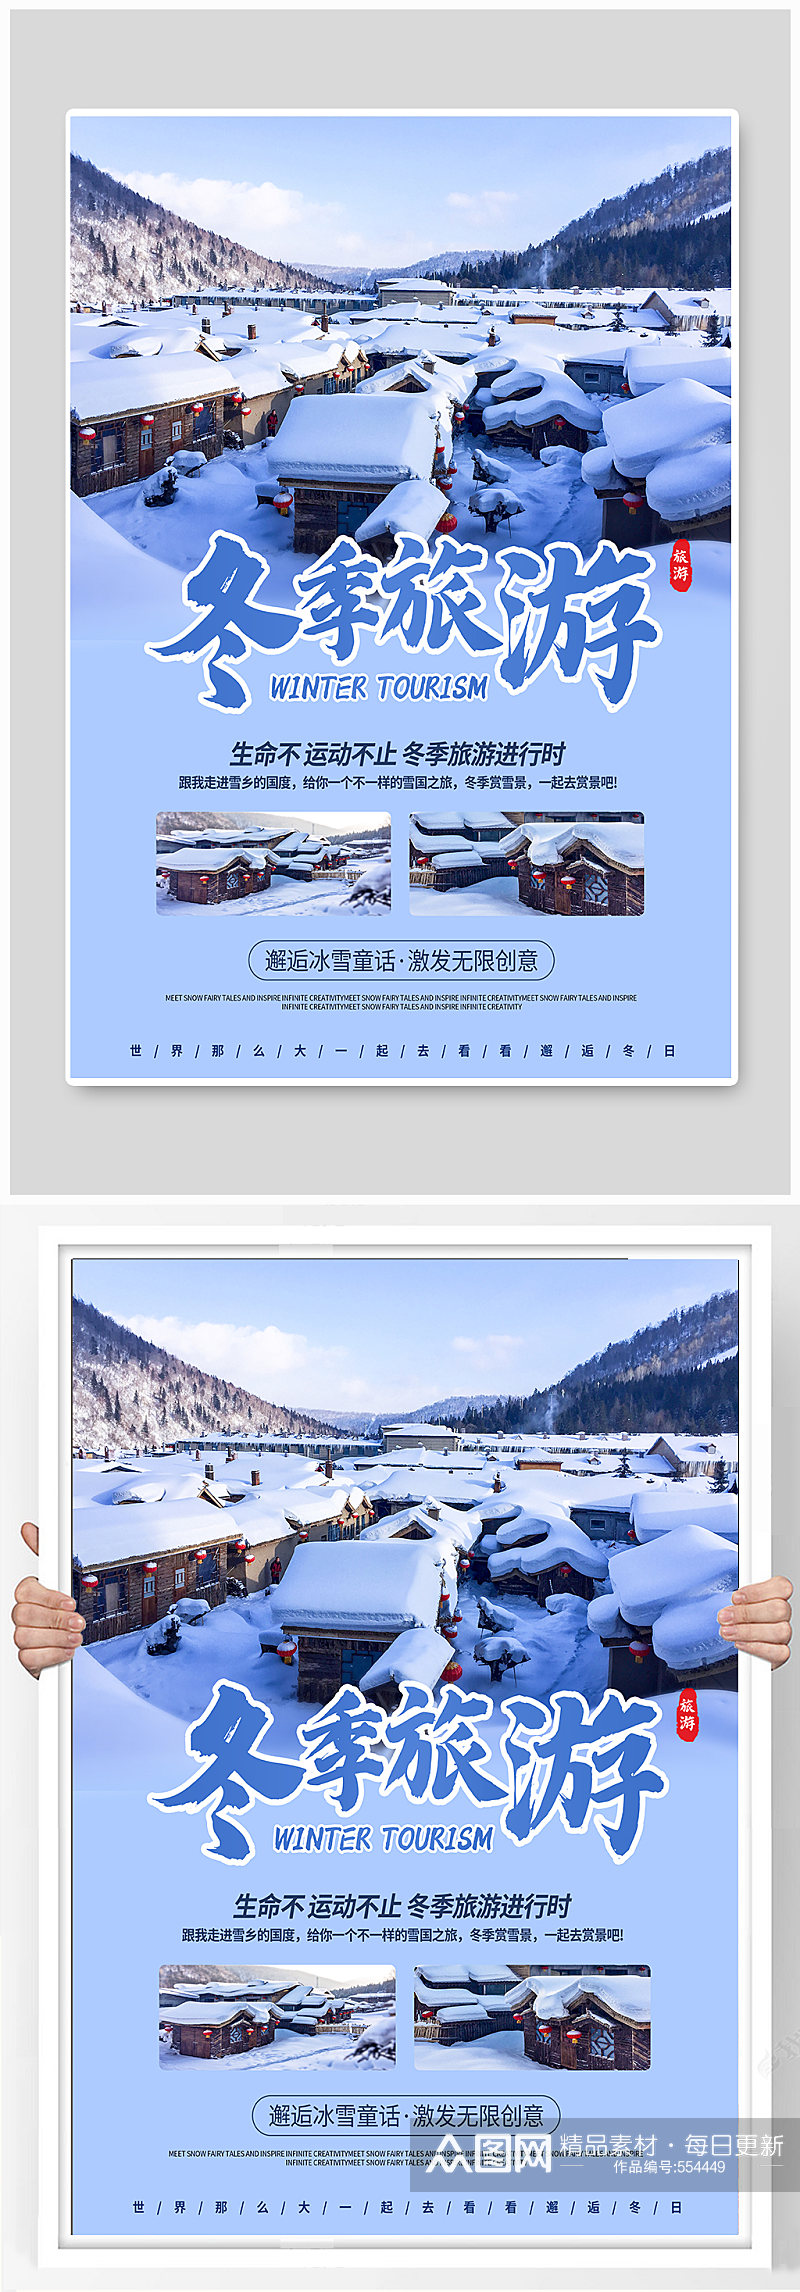 冬季旅游宣传海报素材